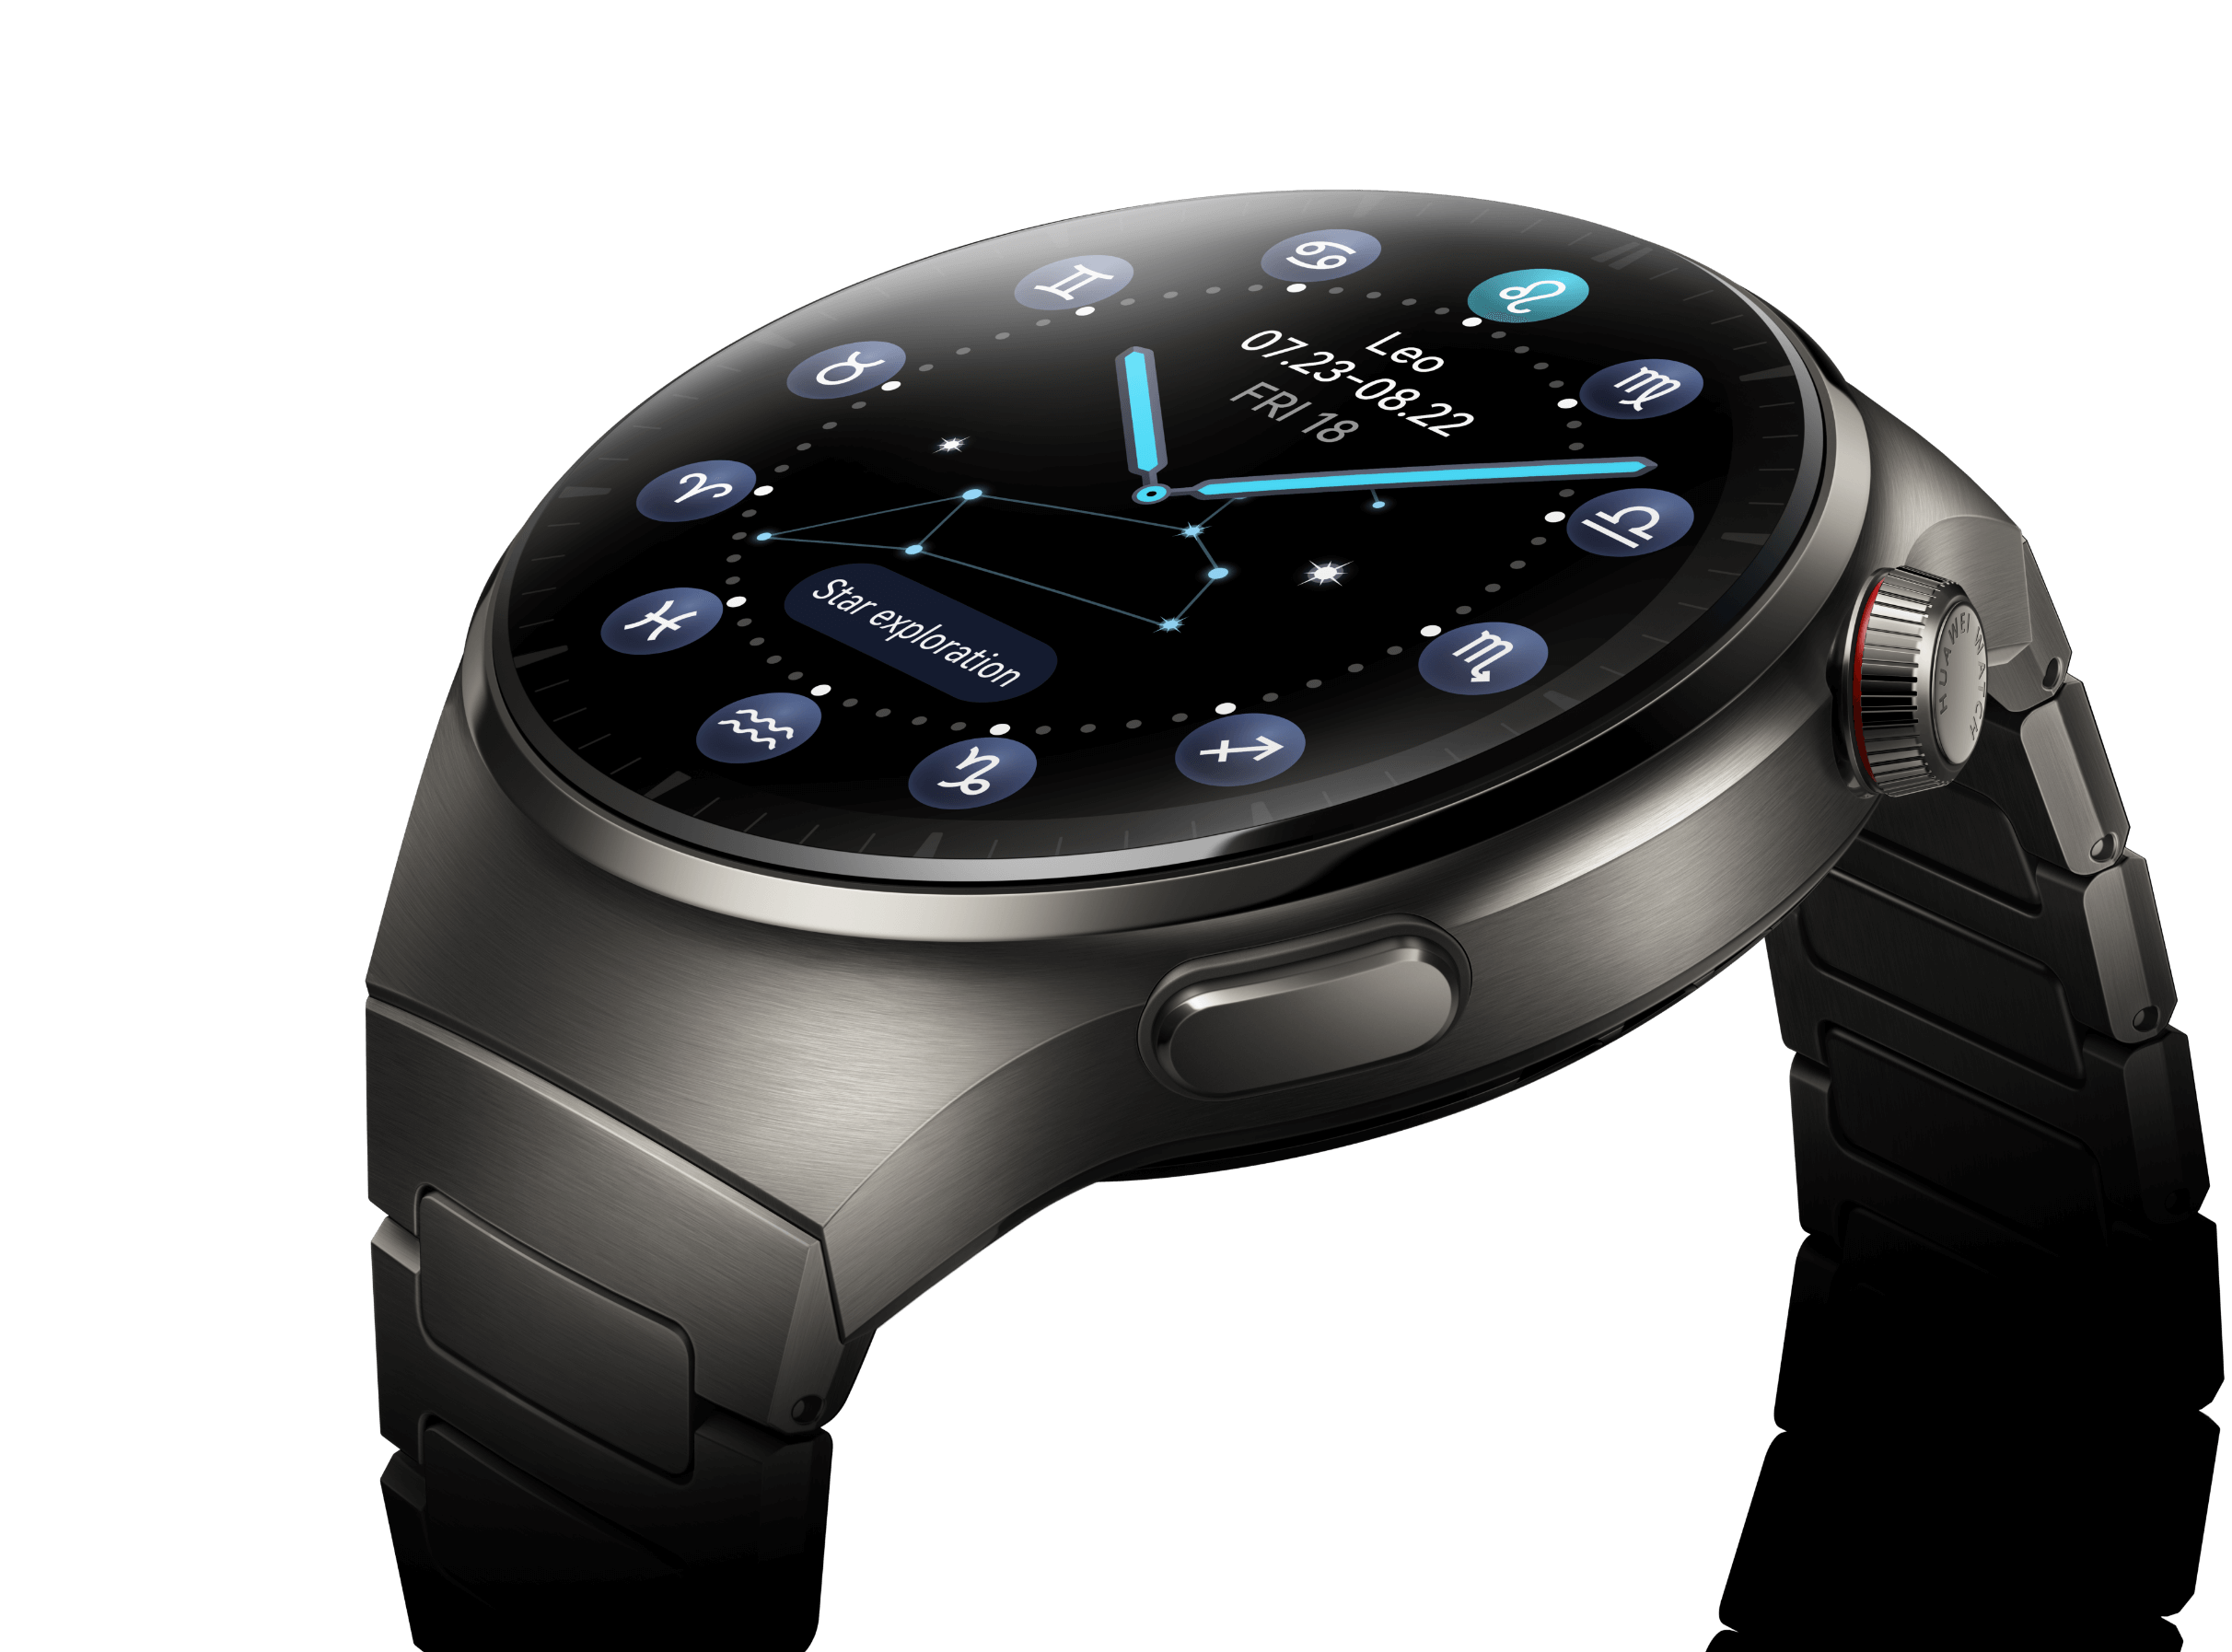 Huawei-reloj inteligente GT4 Pro para hombre, accesorio de pulsera  resistente al agua IP68 con pantalla HD de 2023x360, control del ritmo  cardíaco, llamadas, bluetooth, NFC, Seguimiento Gps, Incluye caja, novedad  de 